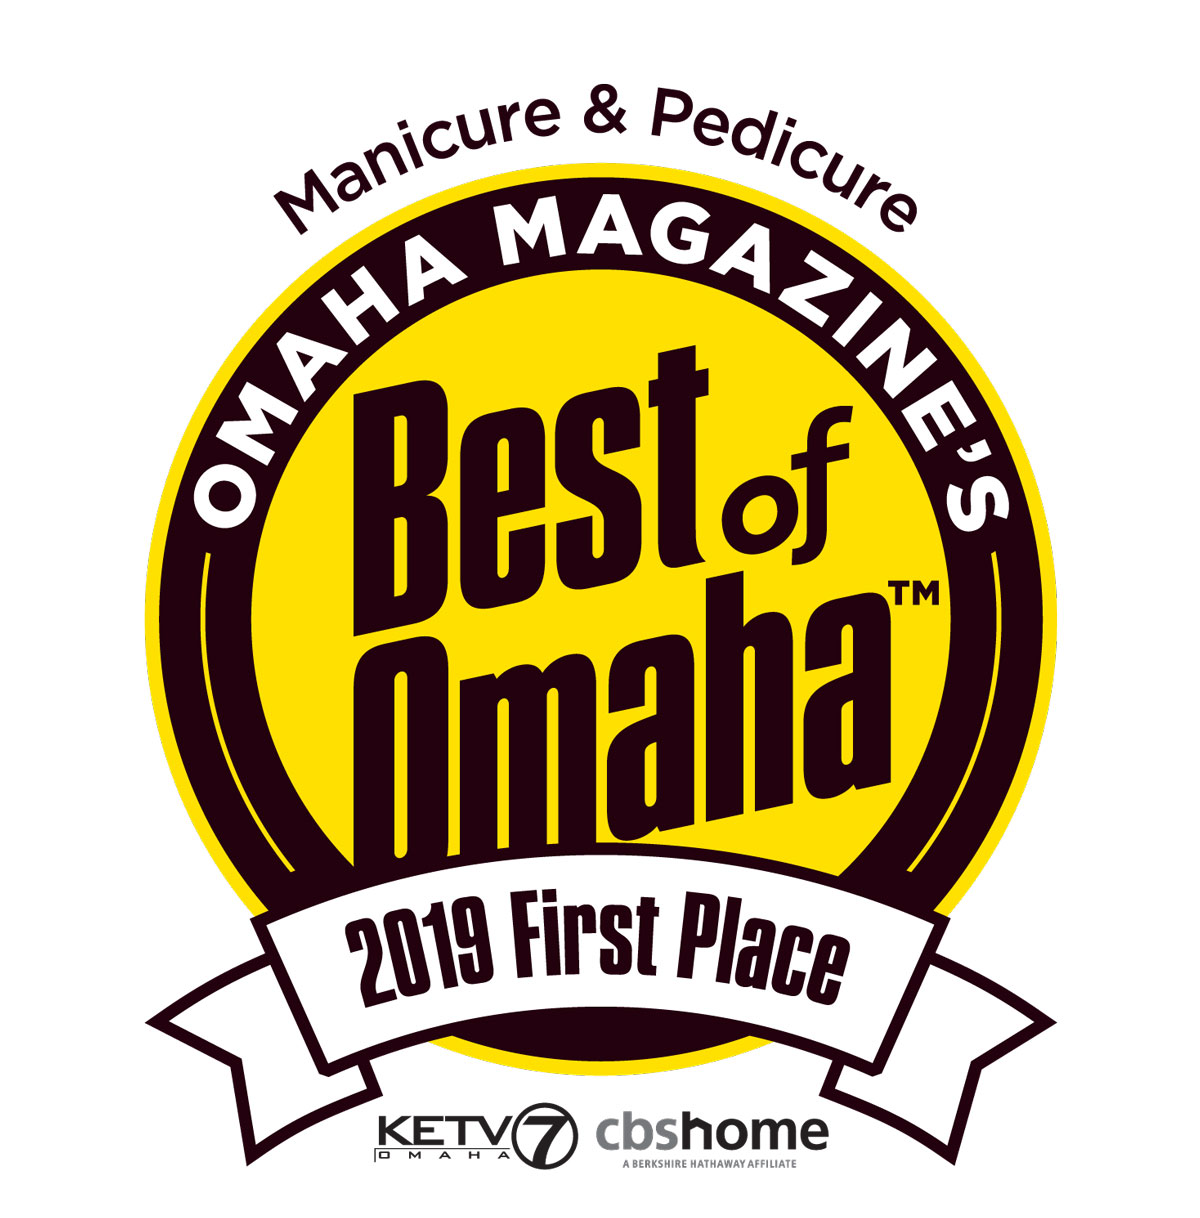 Best Of Omaha!